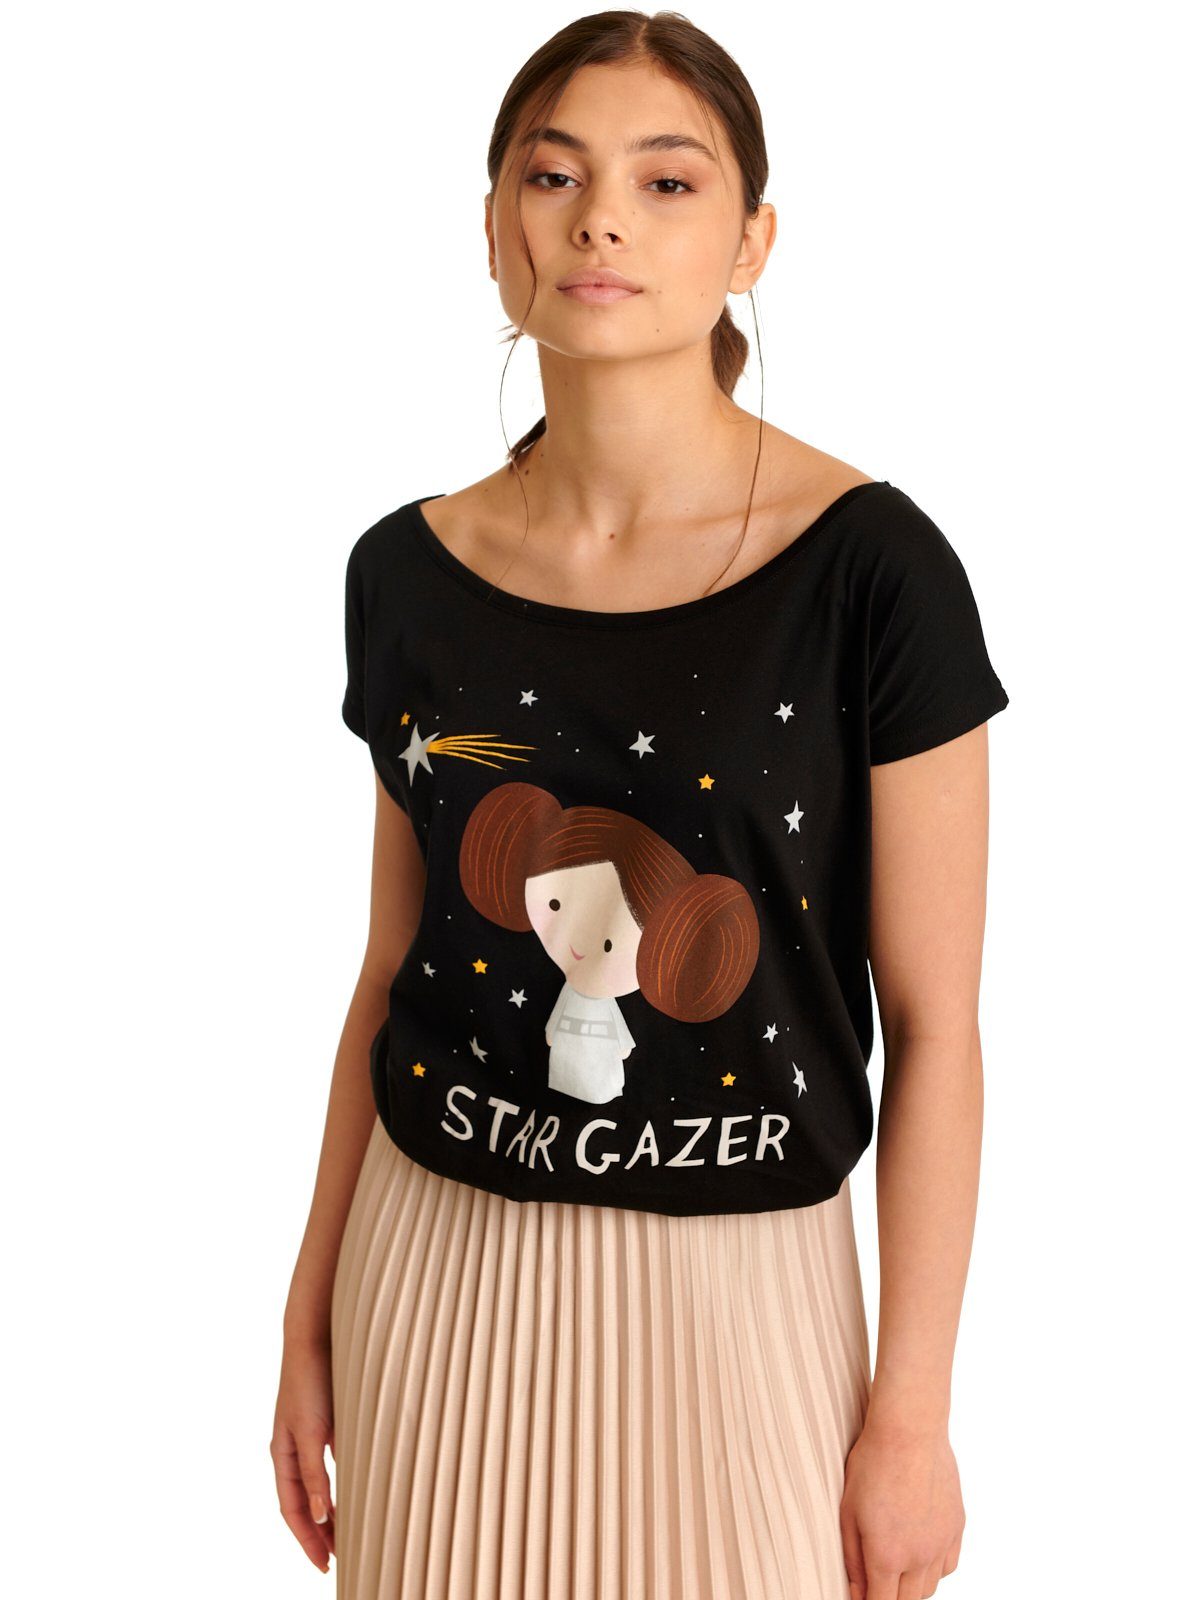 Damen Shirts Star Wars T-Shirt Star Gazer